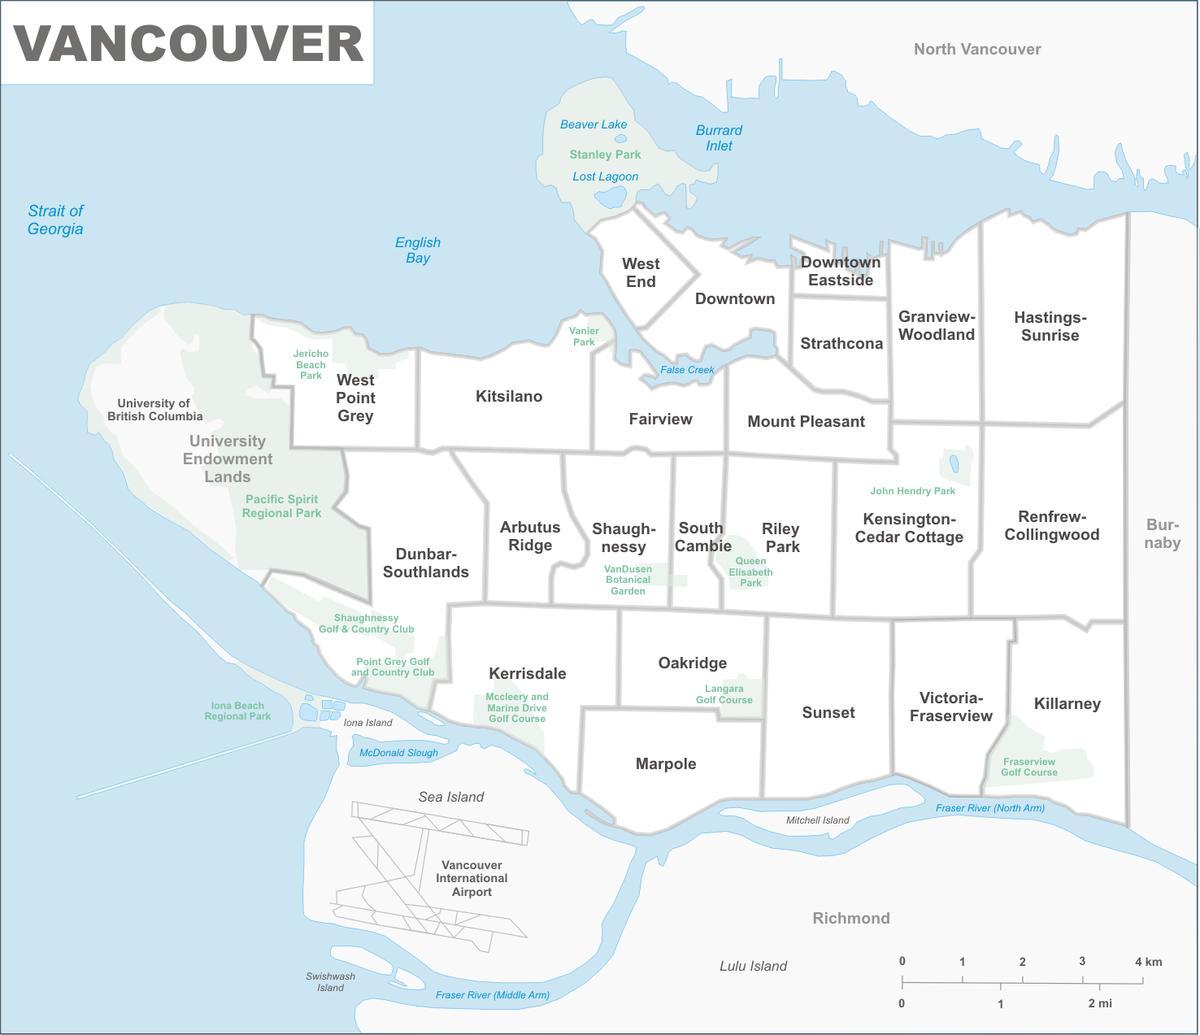 अधिक से अधिक वैंकूवर क्षेत्र का नक्शा